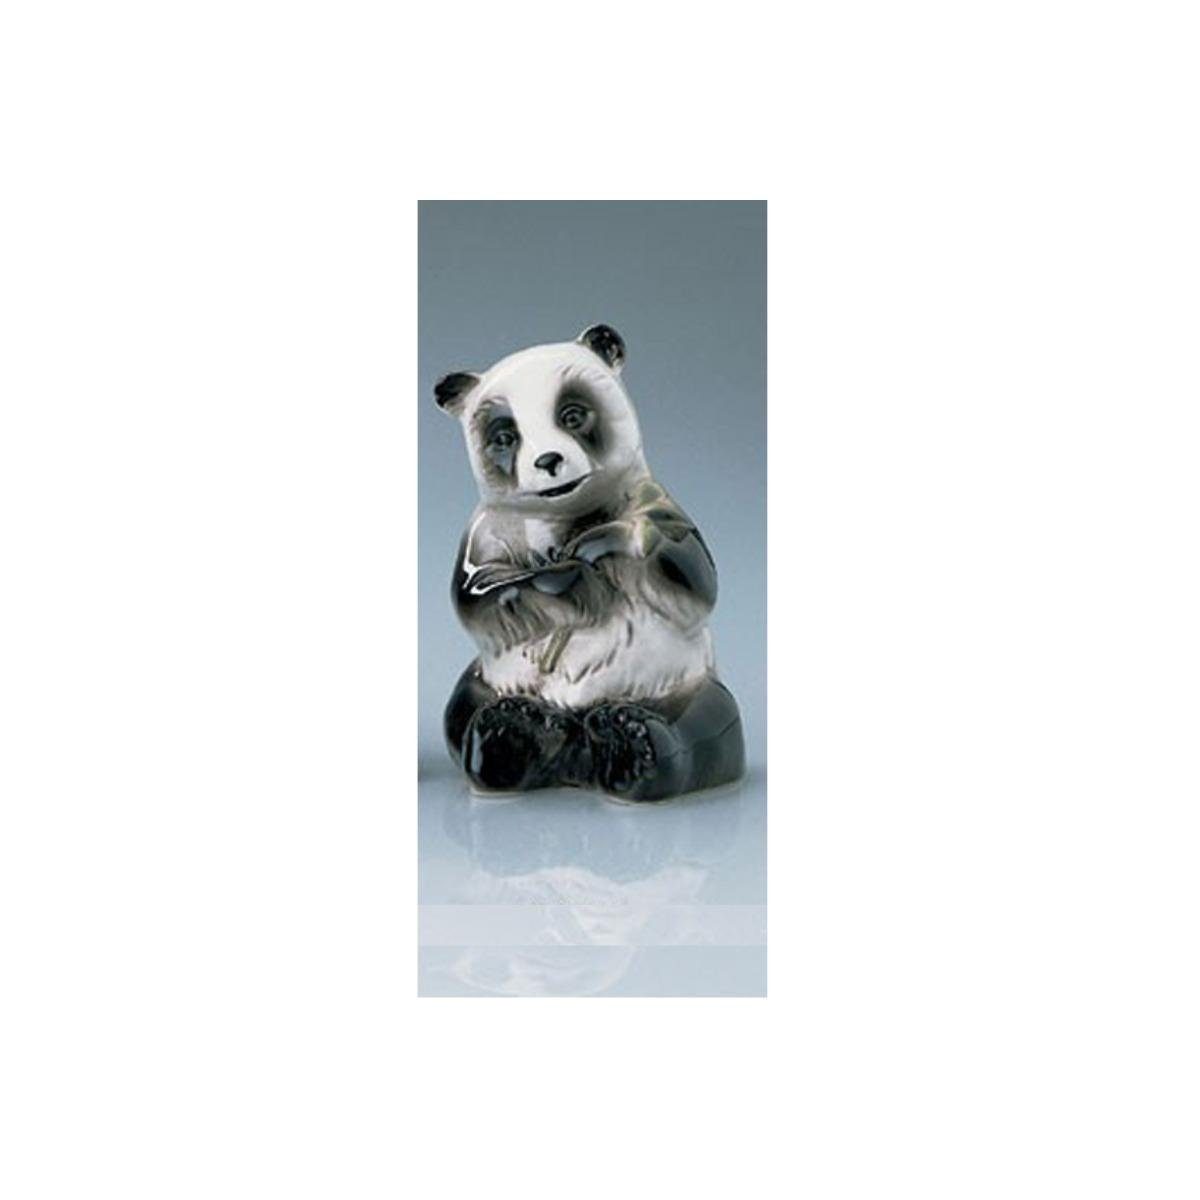 Wagner & Apel Porzellan Dekofigur aufrecht Pandabär, 02599/40 - sitzend